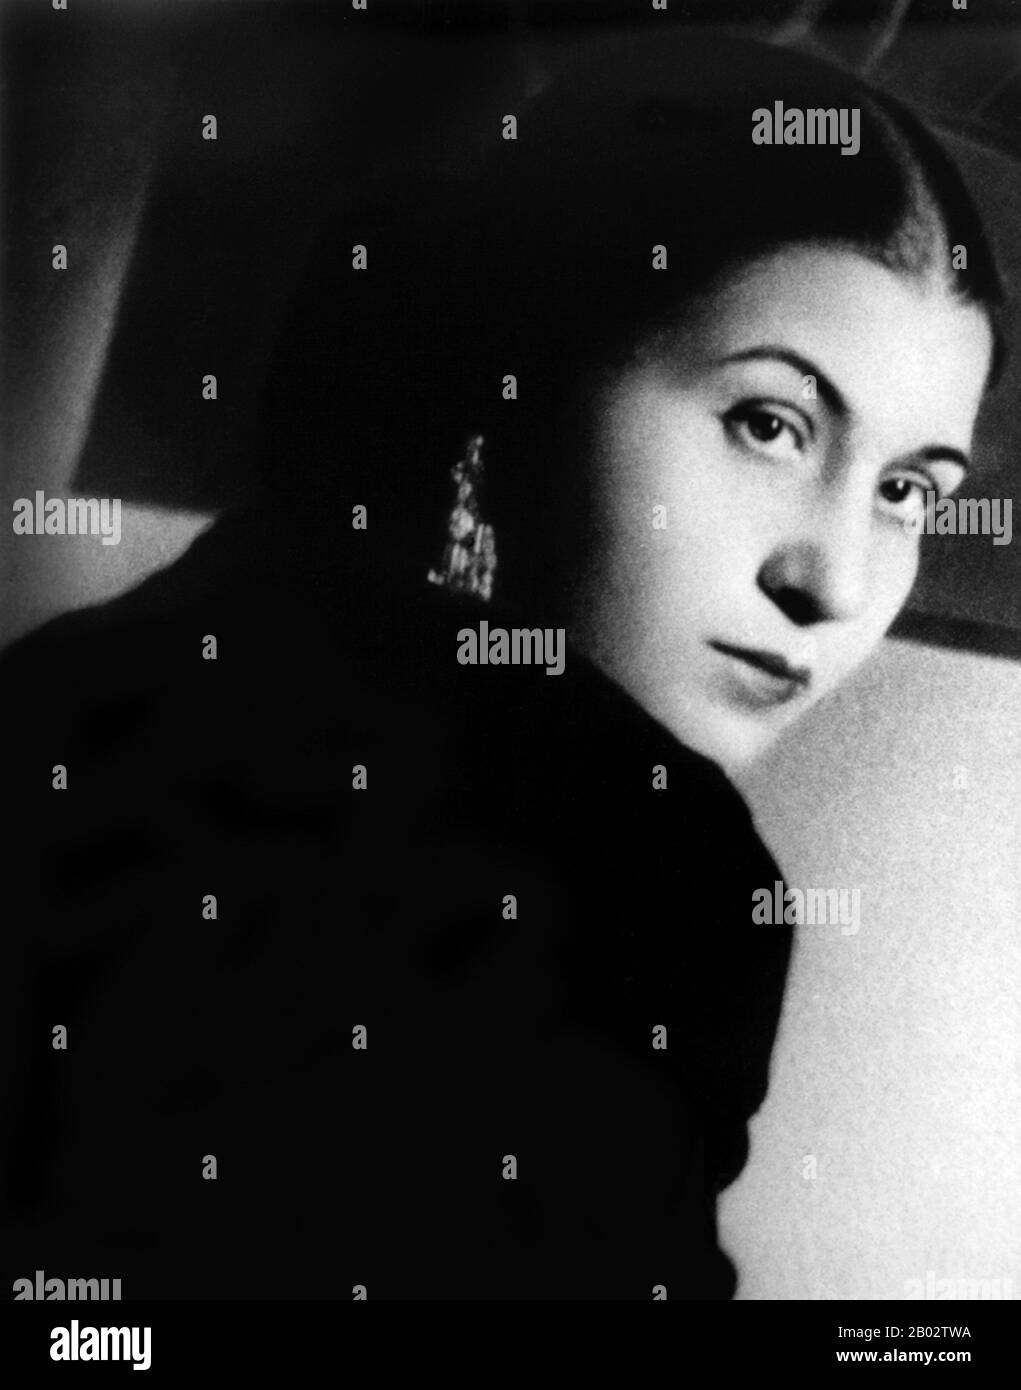 Umm Kulthum, geboren am 30. Dezember als Fatimah Ibrahim as-Sayyid al-Biltagi, und der 3. Februar 1975 starb, war eine international bekannte ägyptische Sängerin, Songwriterin und Filmschauspielerin der 1920er bis 1970er Jahre. Vier Jahrzehnte nach ihrem Tod 1975 gilt sie noch immer weithin als die vielleicht größte arabische Sängerin überhaupt. Stockfoto